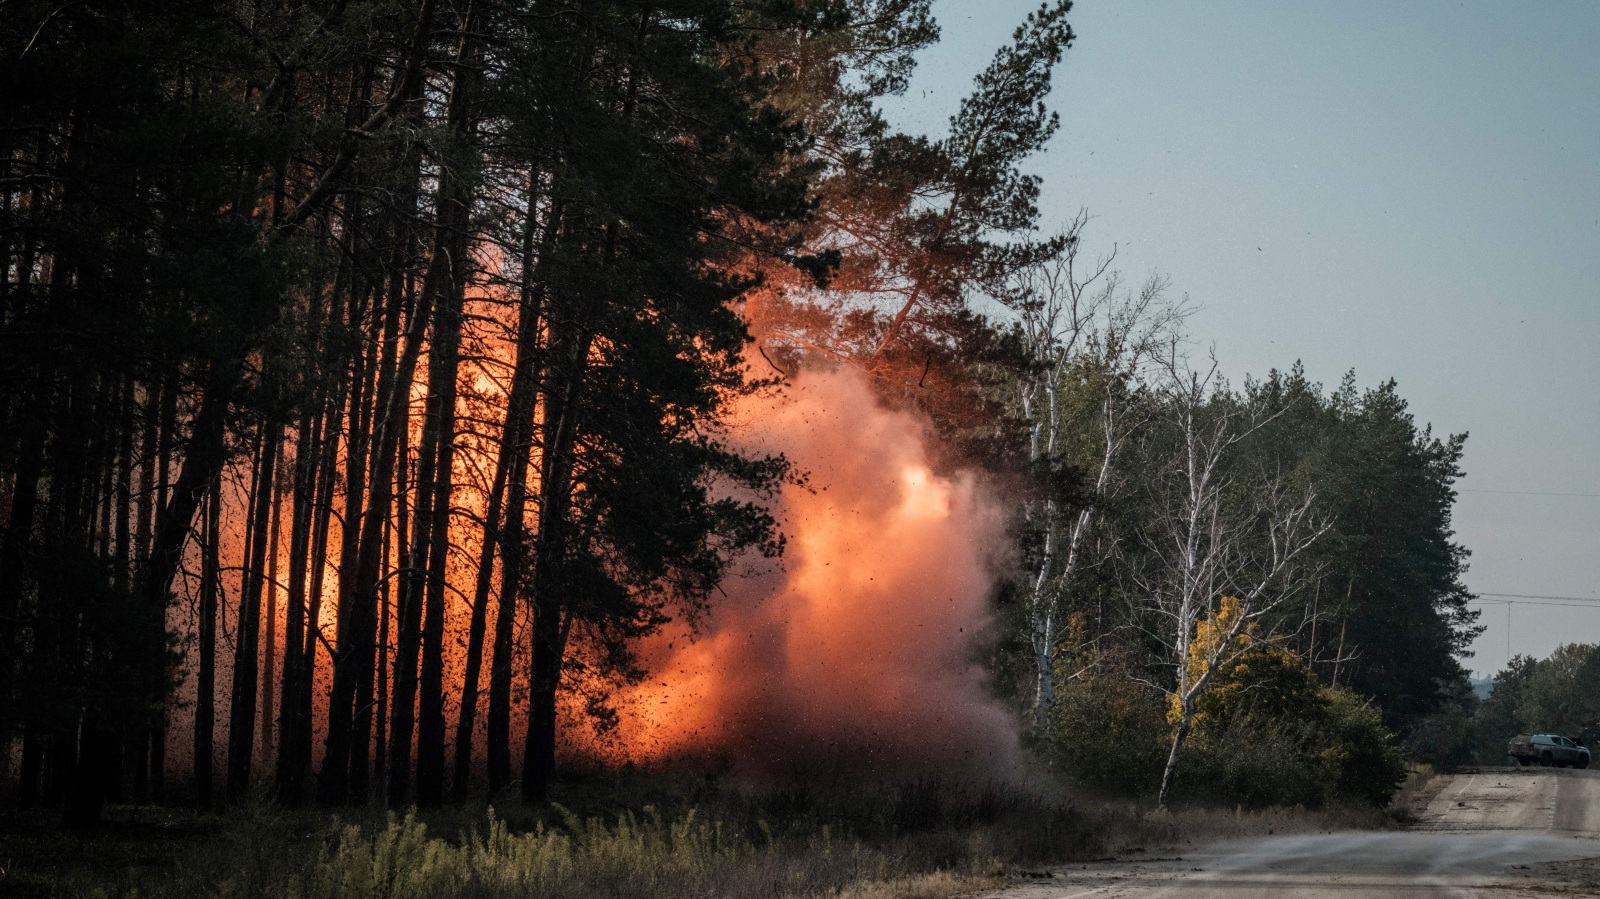 explosives detonated in pine forest in Ukraine